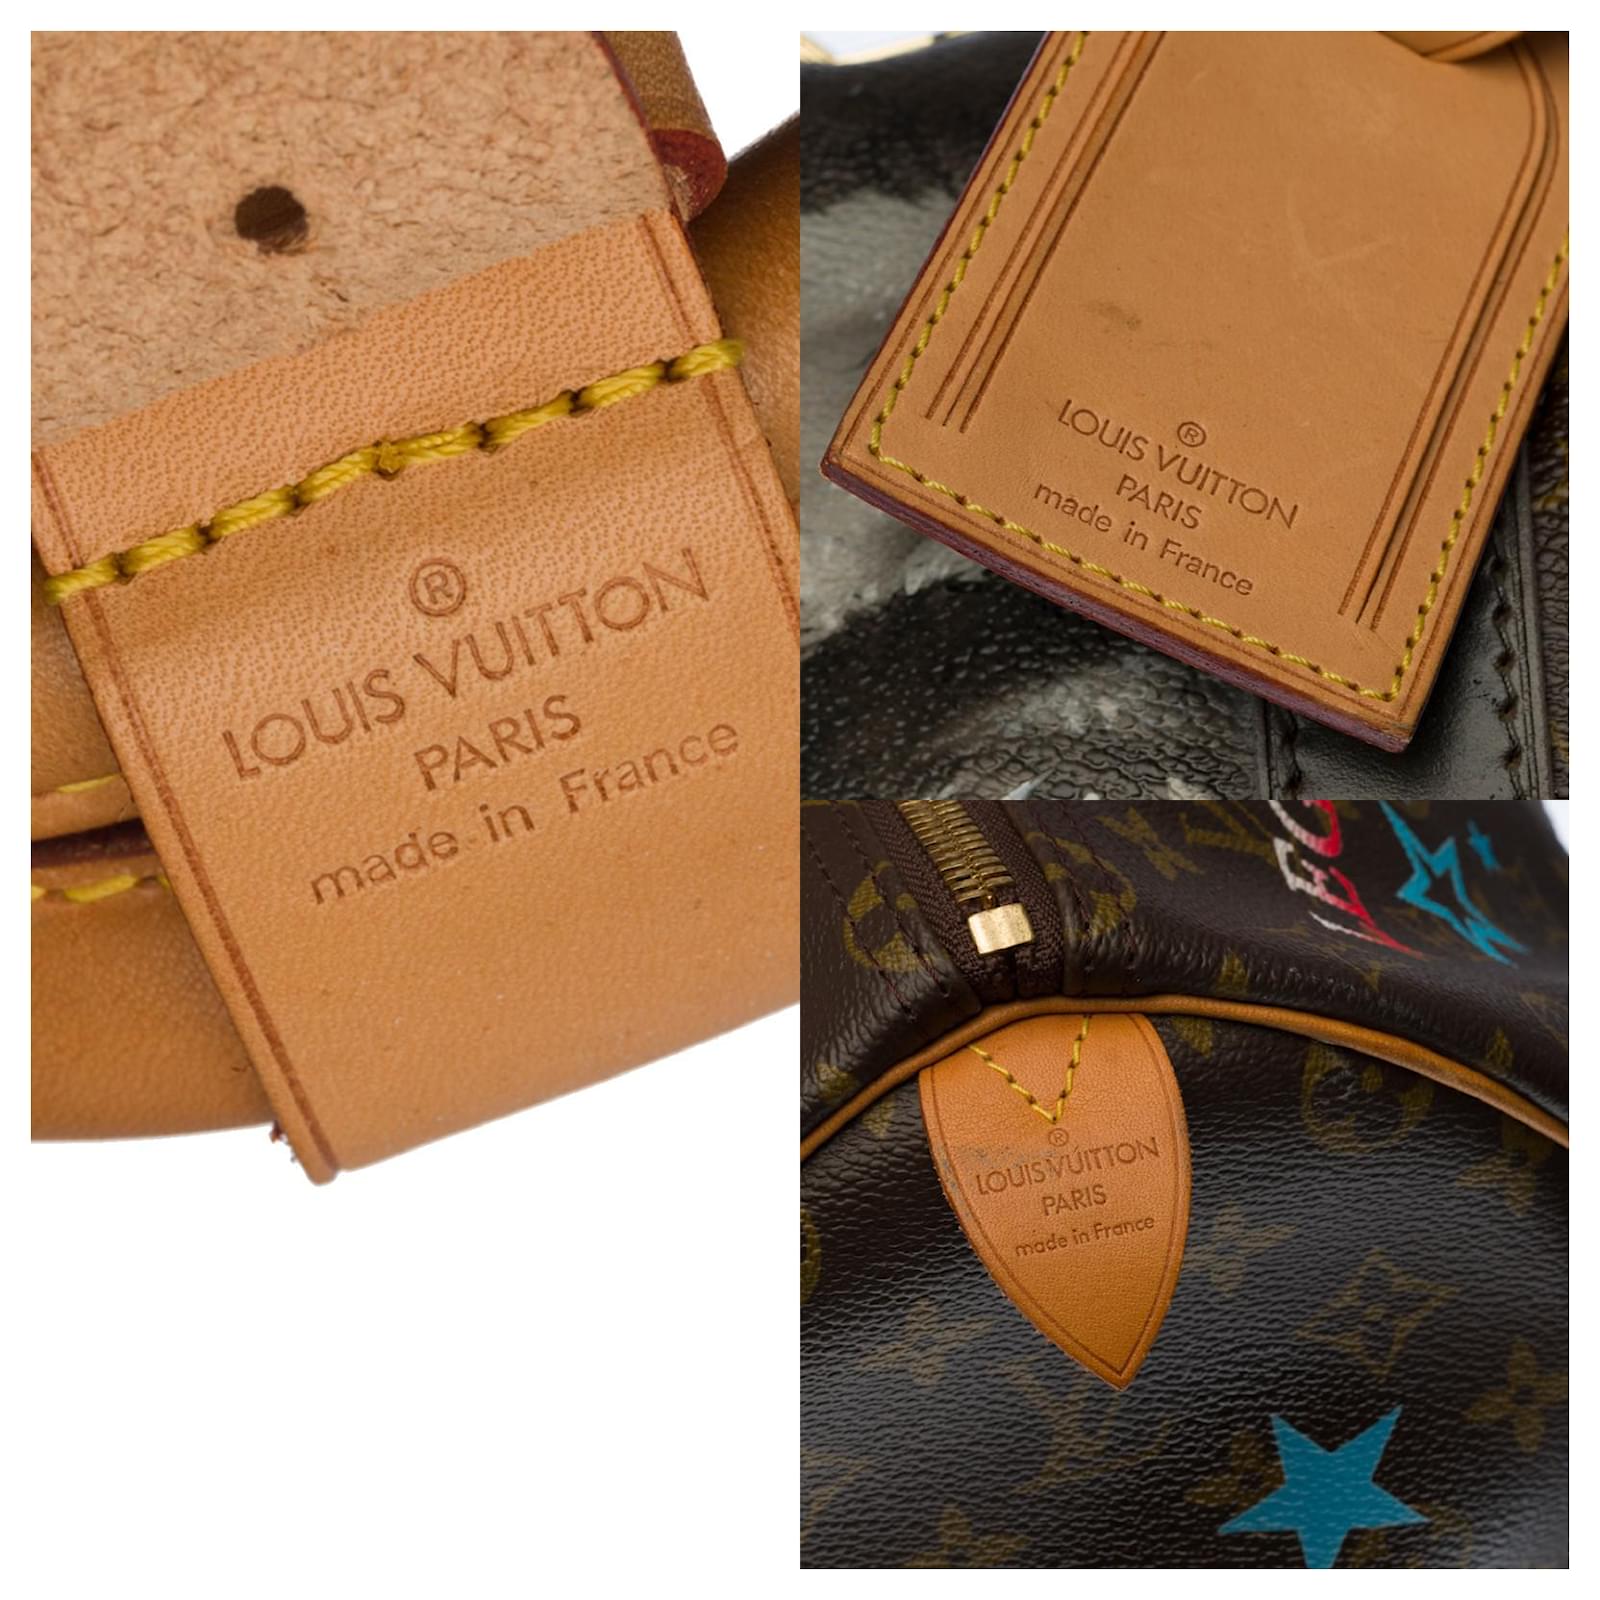 New Customized Louis Vuitton Keepall 55 Macassar strap JOKER